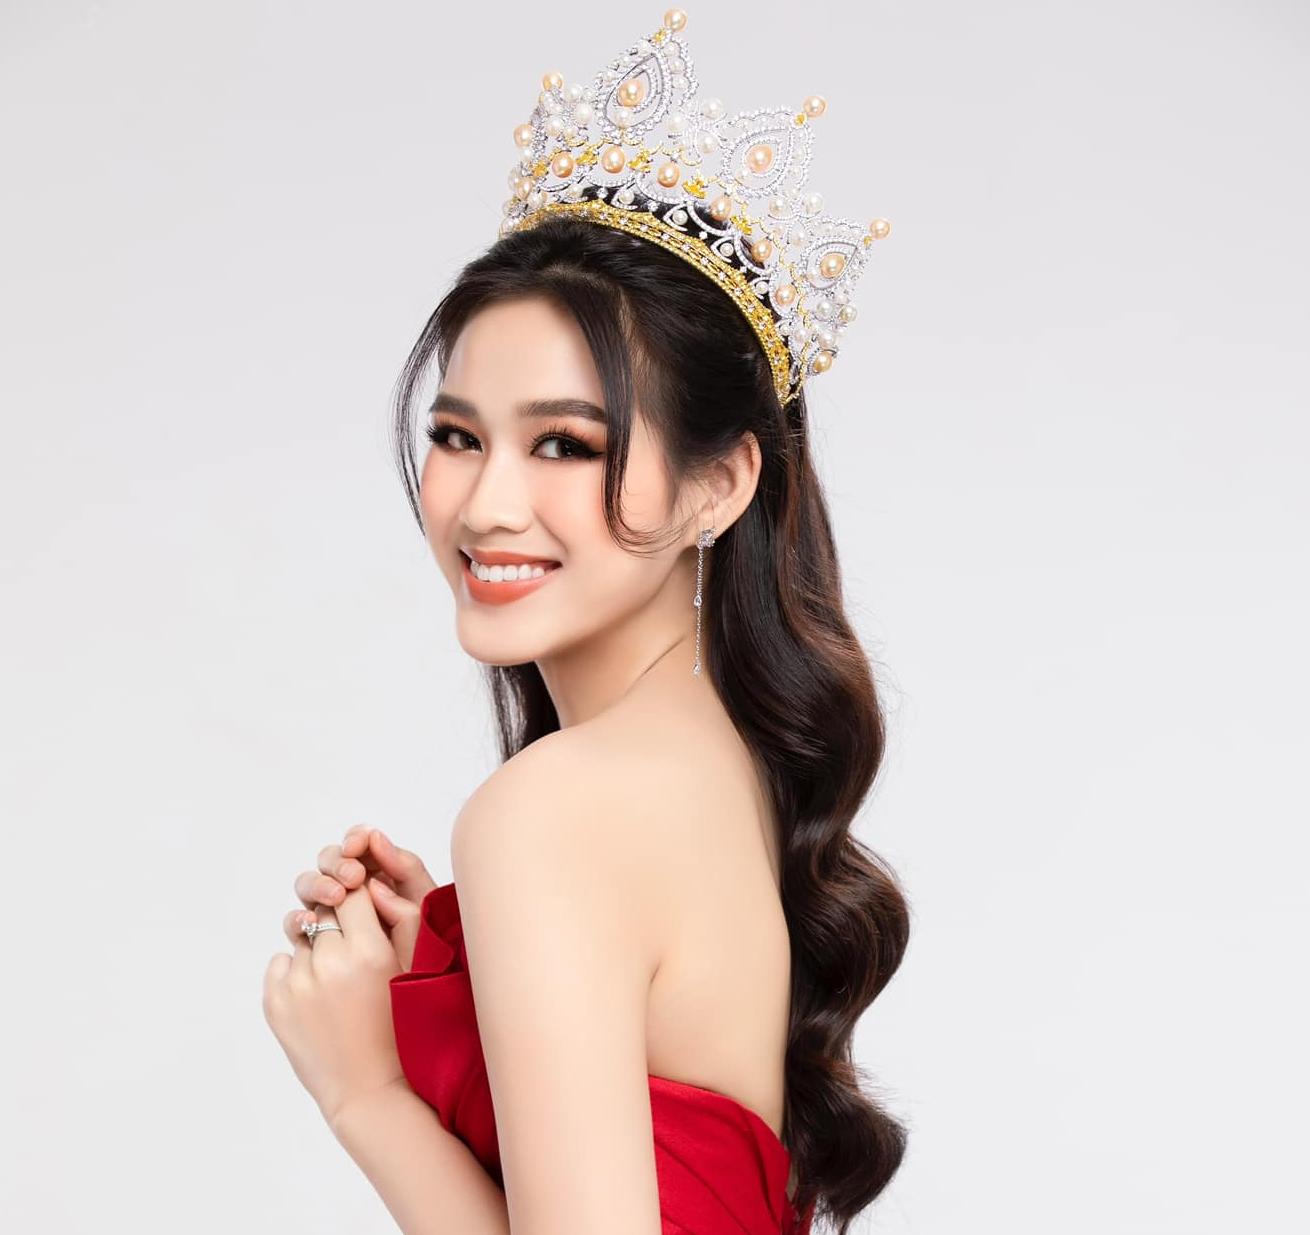 Hoa hậu Đỗ Thị Hà nhận điểm 10 tinh tế khi chúc mừng sinh nhật Miss World 2016 - Ảnh 1